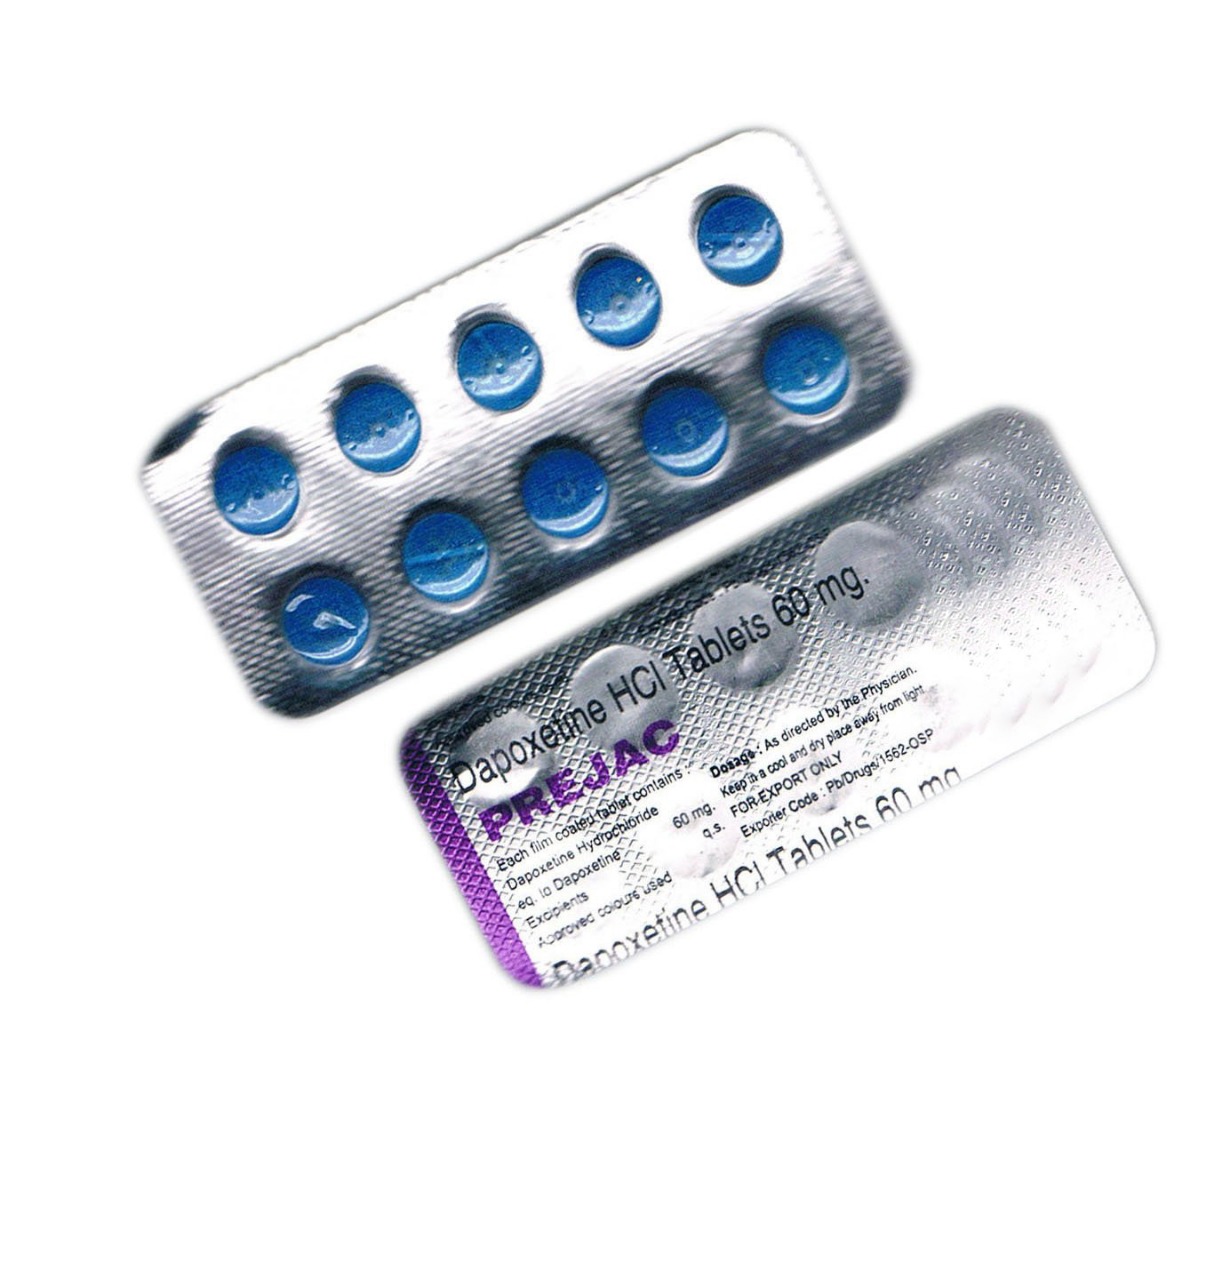 Buy Dapoxetine I Dapoxetine Dosage I Dapoxetine Review I Prejac 60mg.